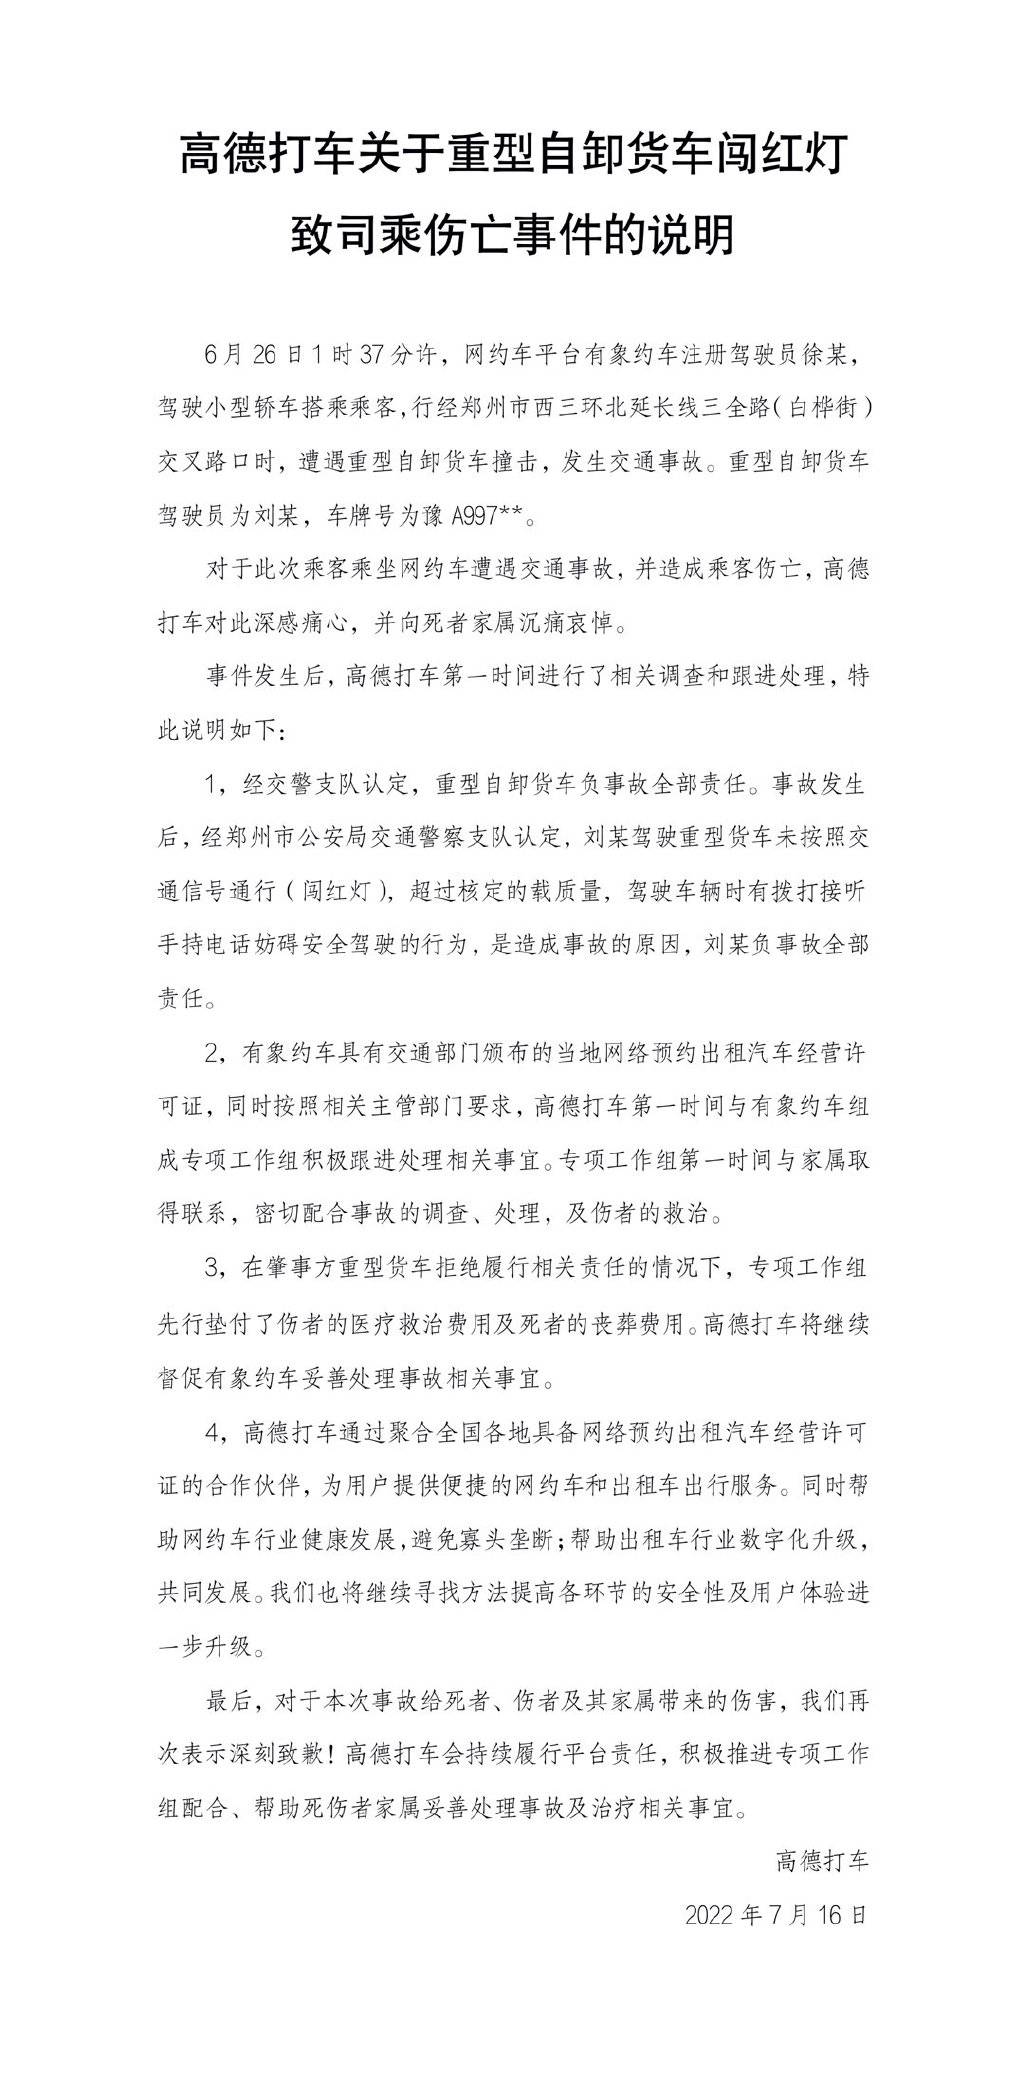 6 12 - Confermato il tempo di rilascio di Huawei Hongmeng 3 / Produzione di massa di iPhone 14 ad agosto / AutoNavi ha risposto alla morte di un passeggero in un incidente d’auto a Zhengzhou